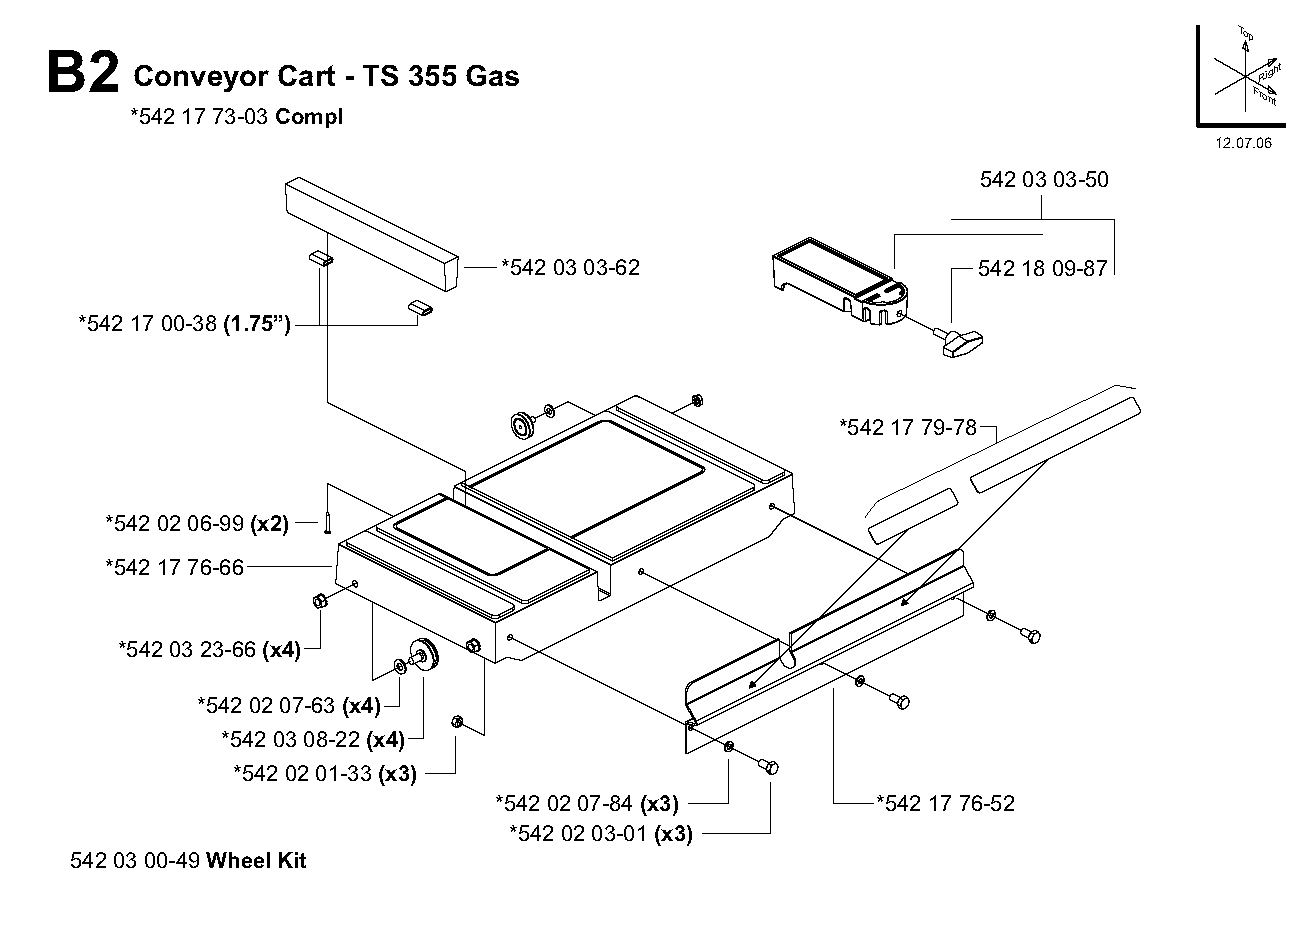 Conveyor cart (A)